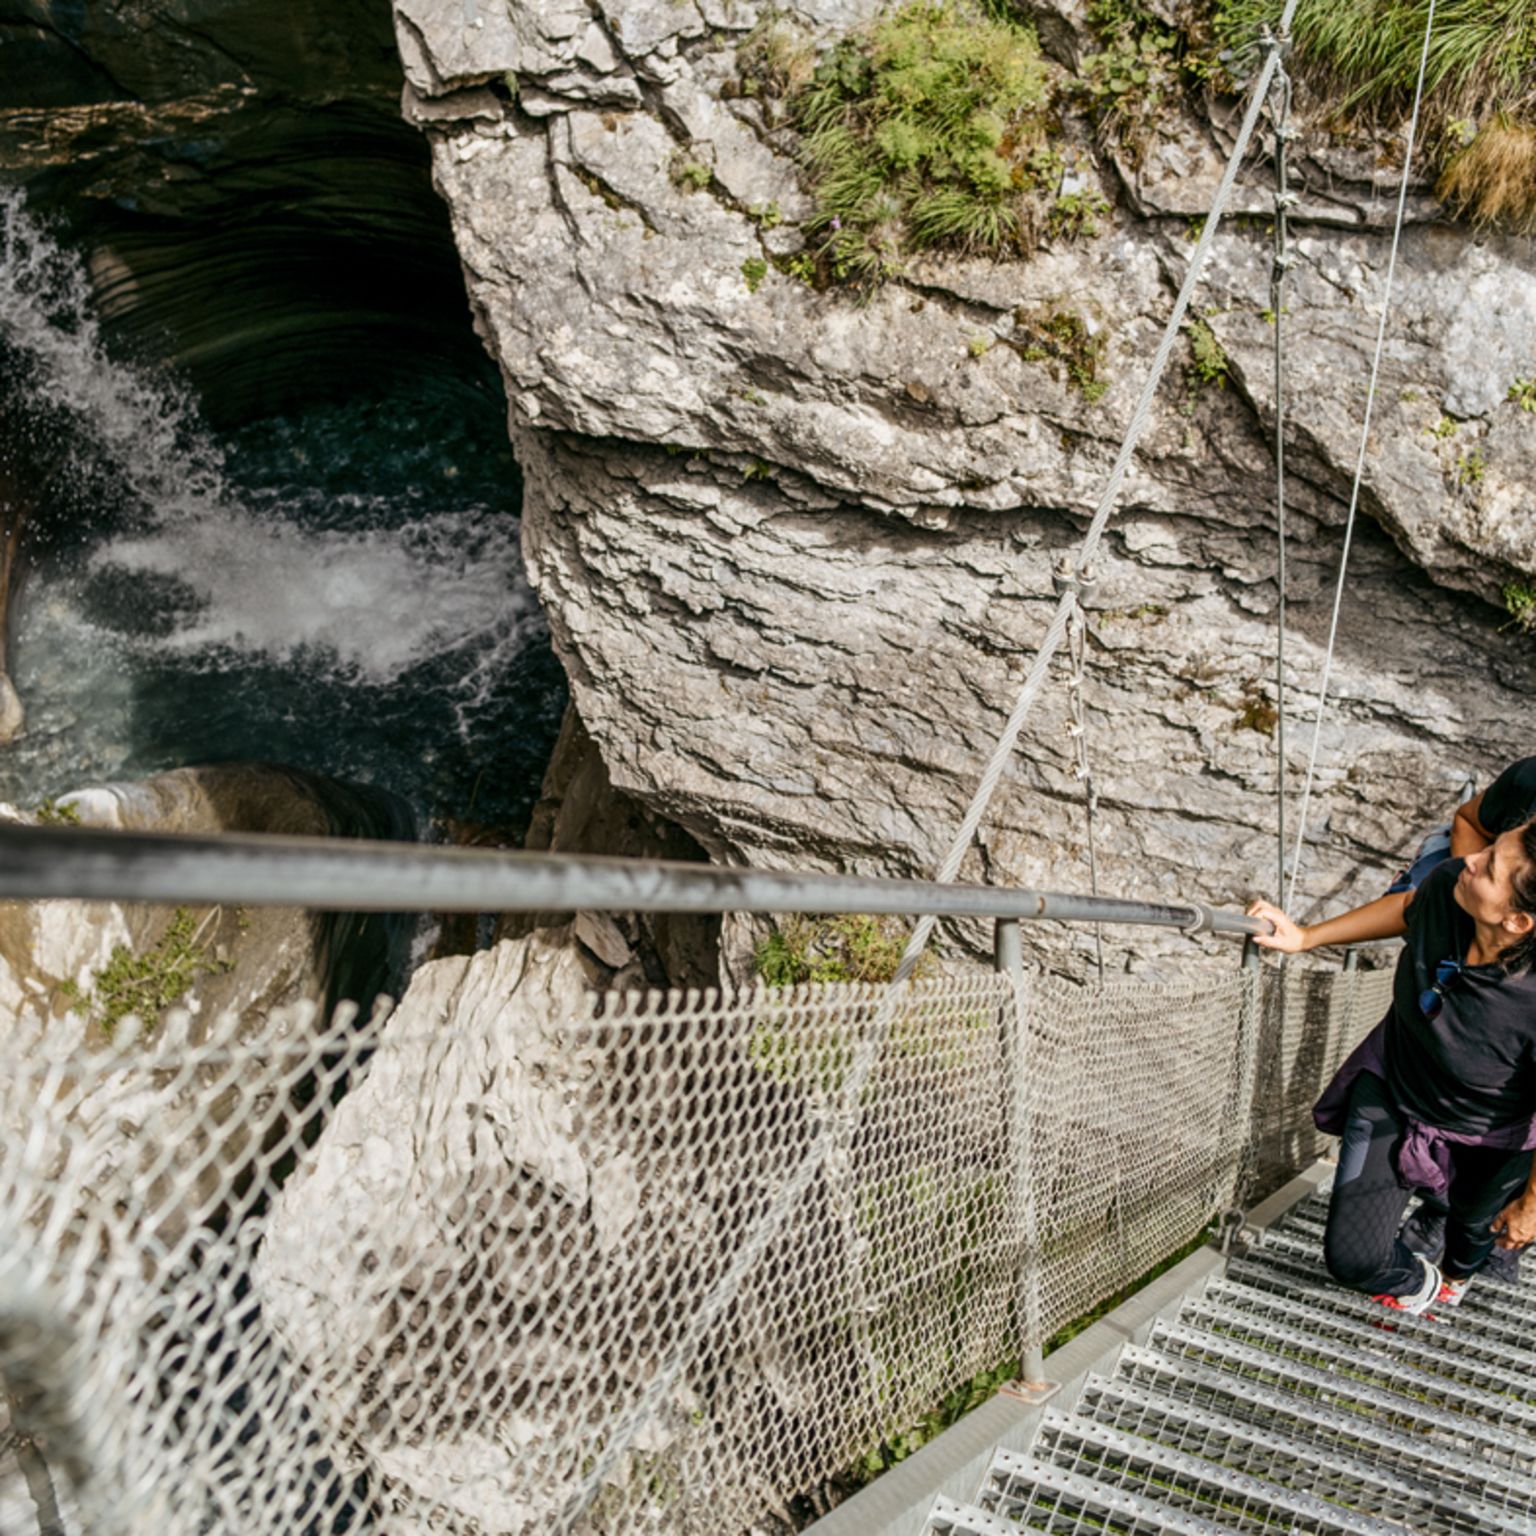 La chute d'eau peut être admirée depuis les deux marches raides, Valais, Suisse.